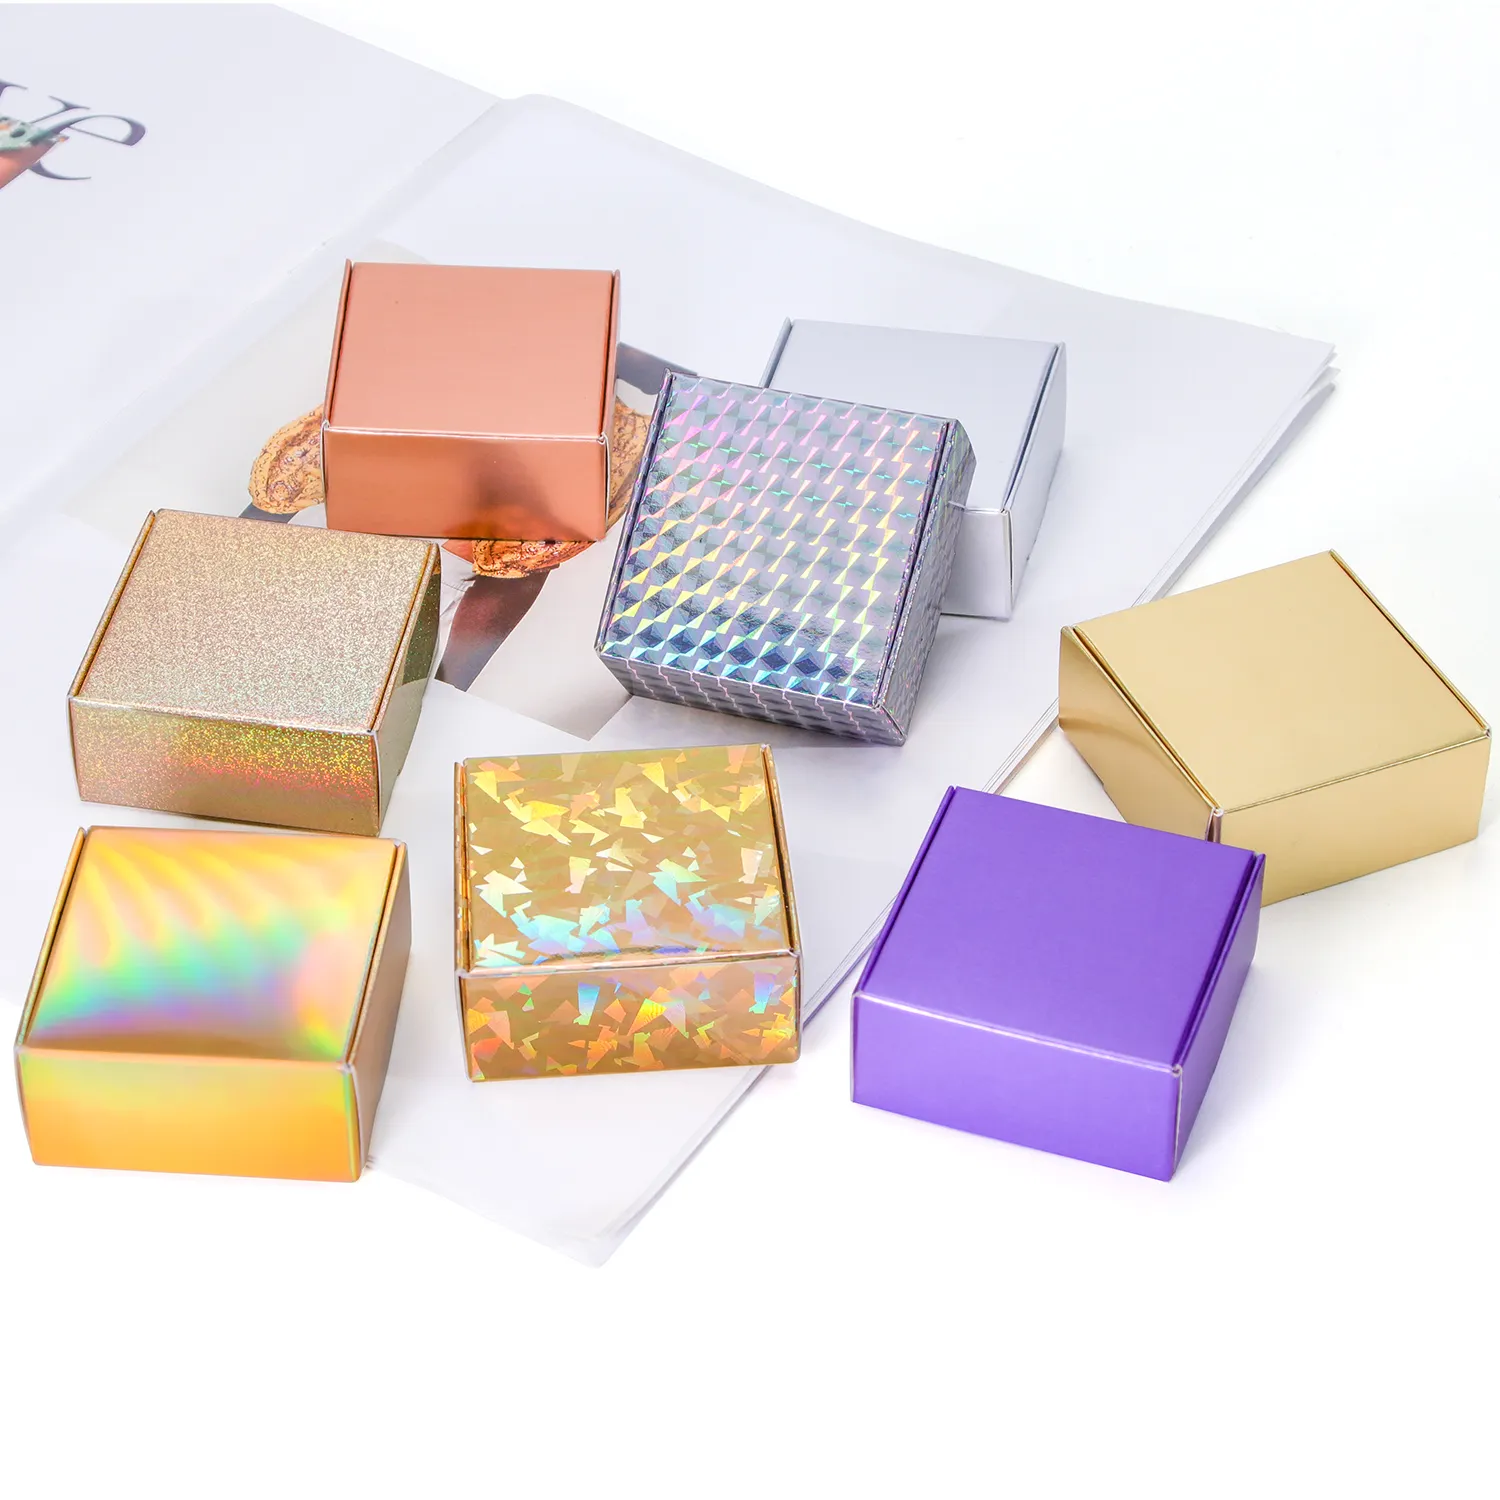 레이저 홀로그램 무지개 빛깔의 은색 UV 인쇄 광택 화장품 골판지 선물 종이 우편물 상자